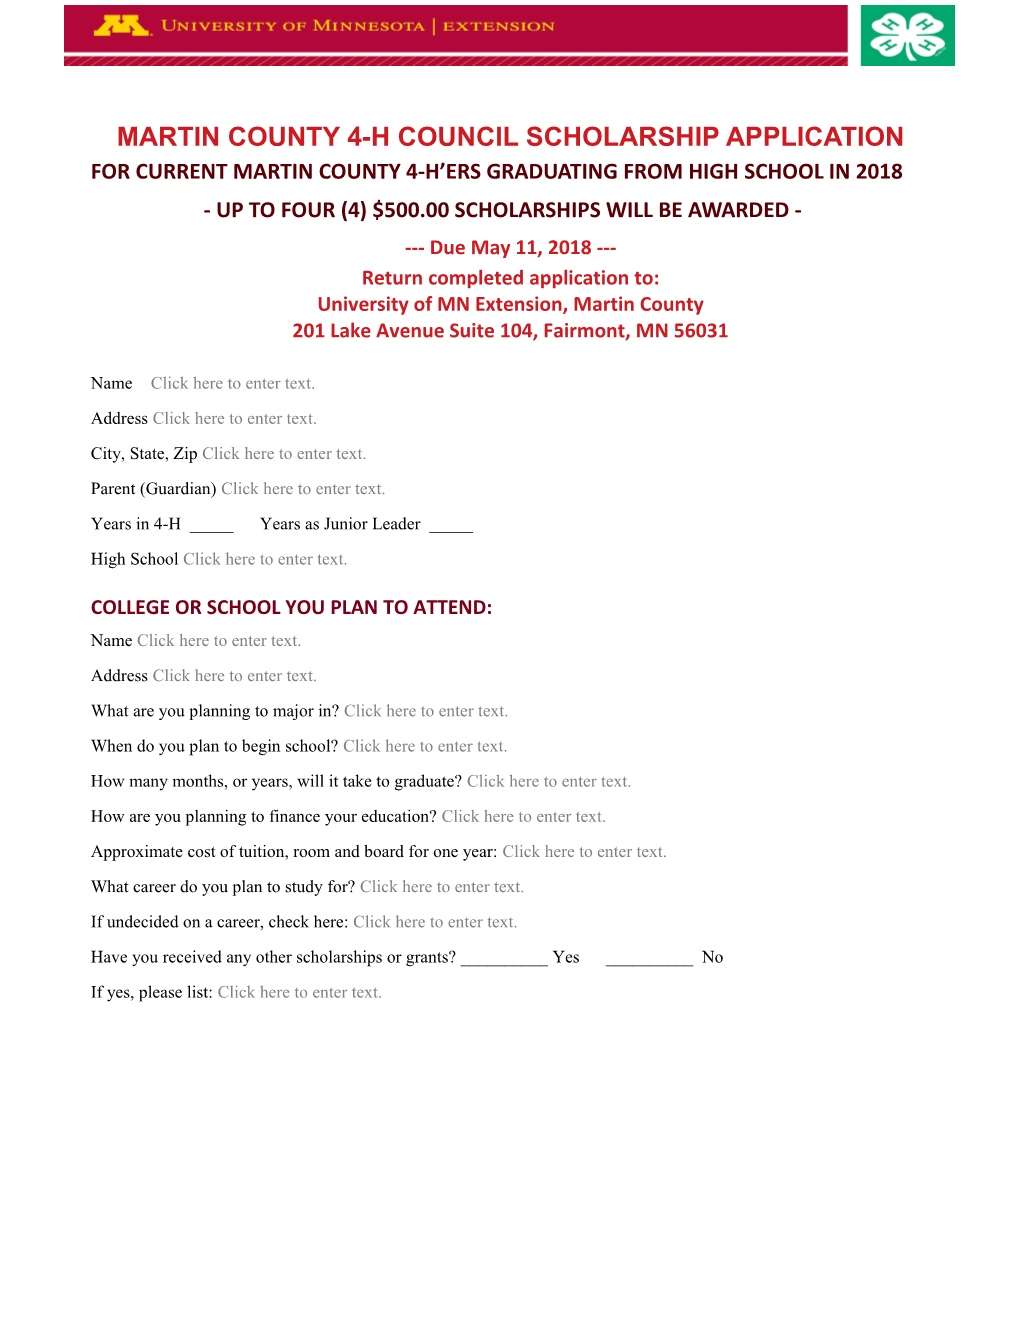 Martin County 4-H Council Scholarship Application